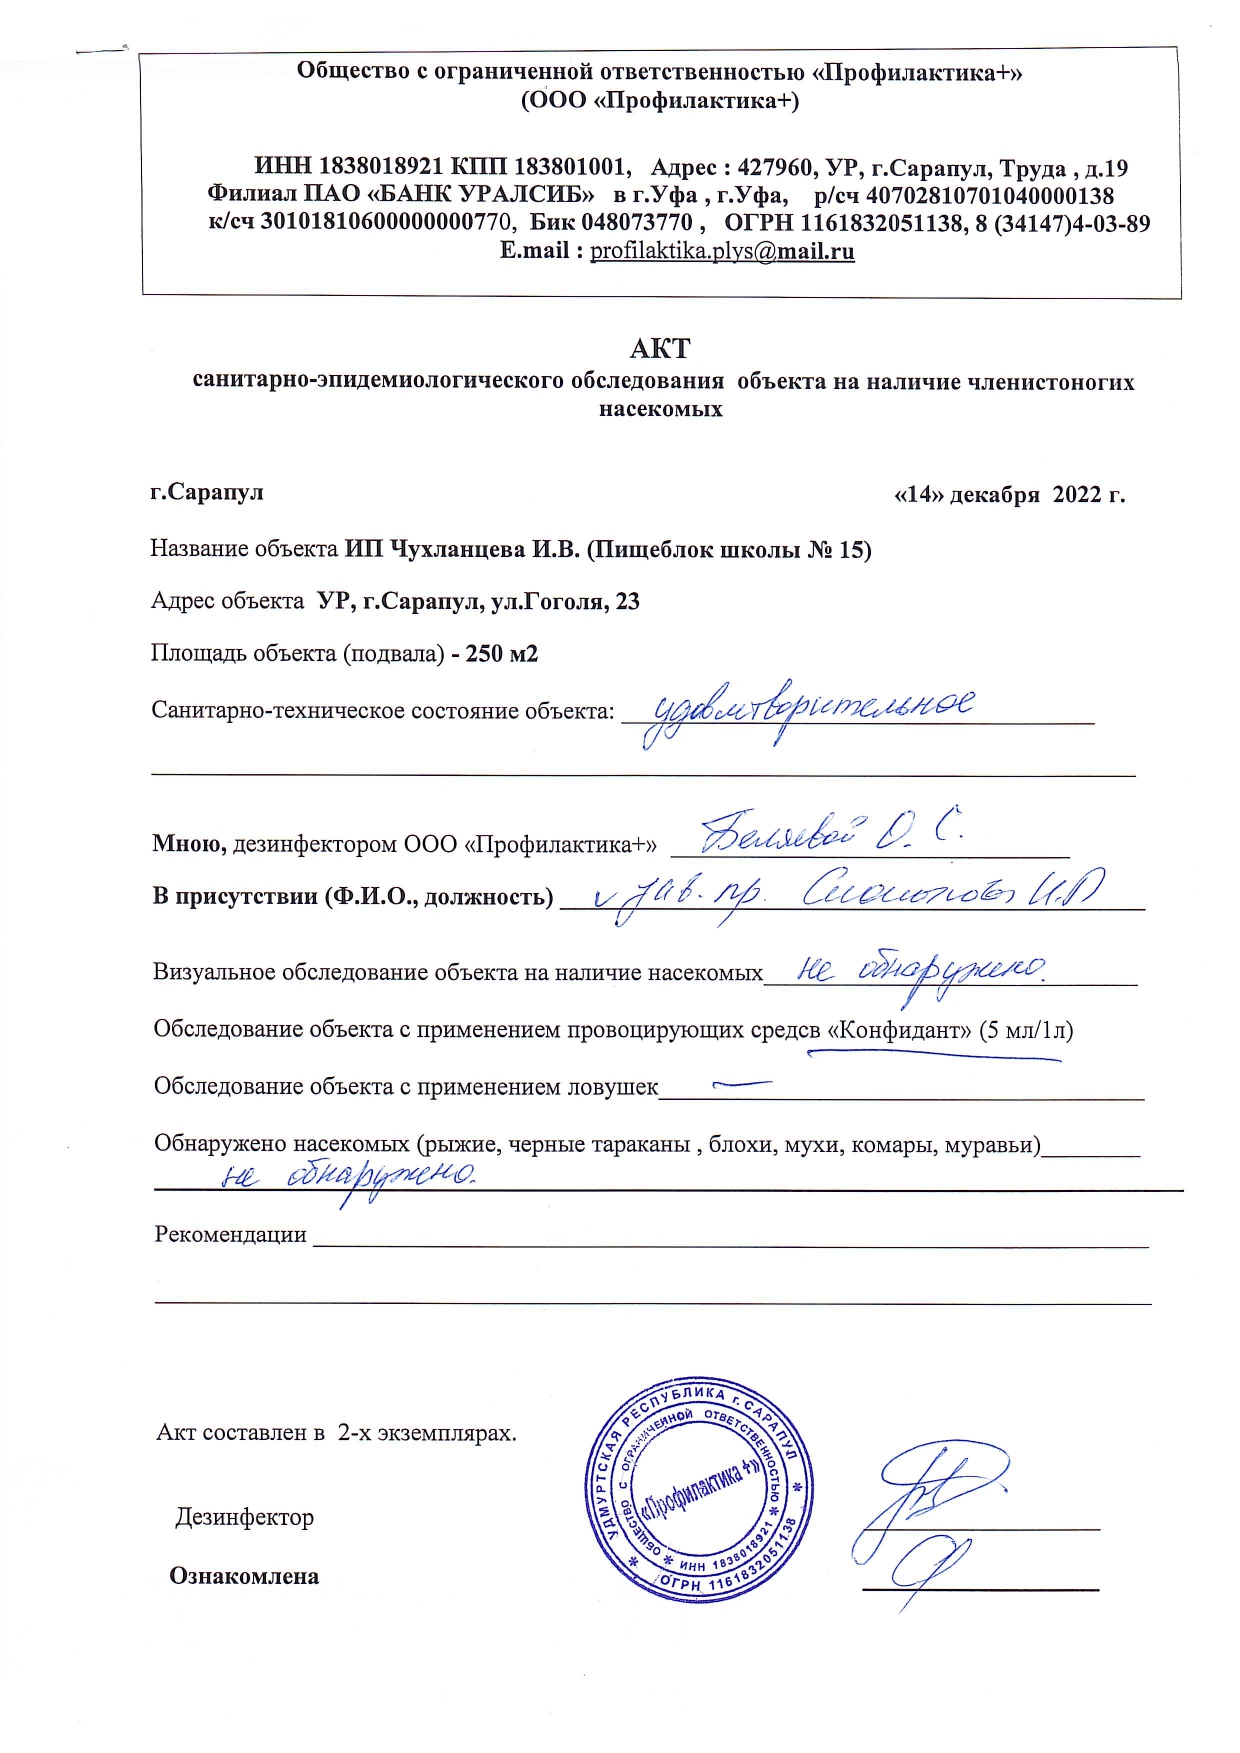 АКТ сан.обследования ИП Чухланцева И.В. от 14.12.2022 г.